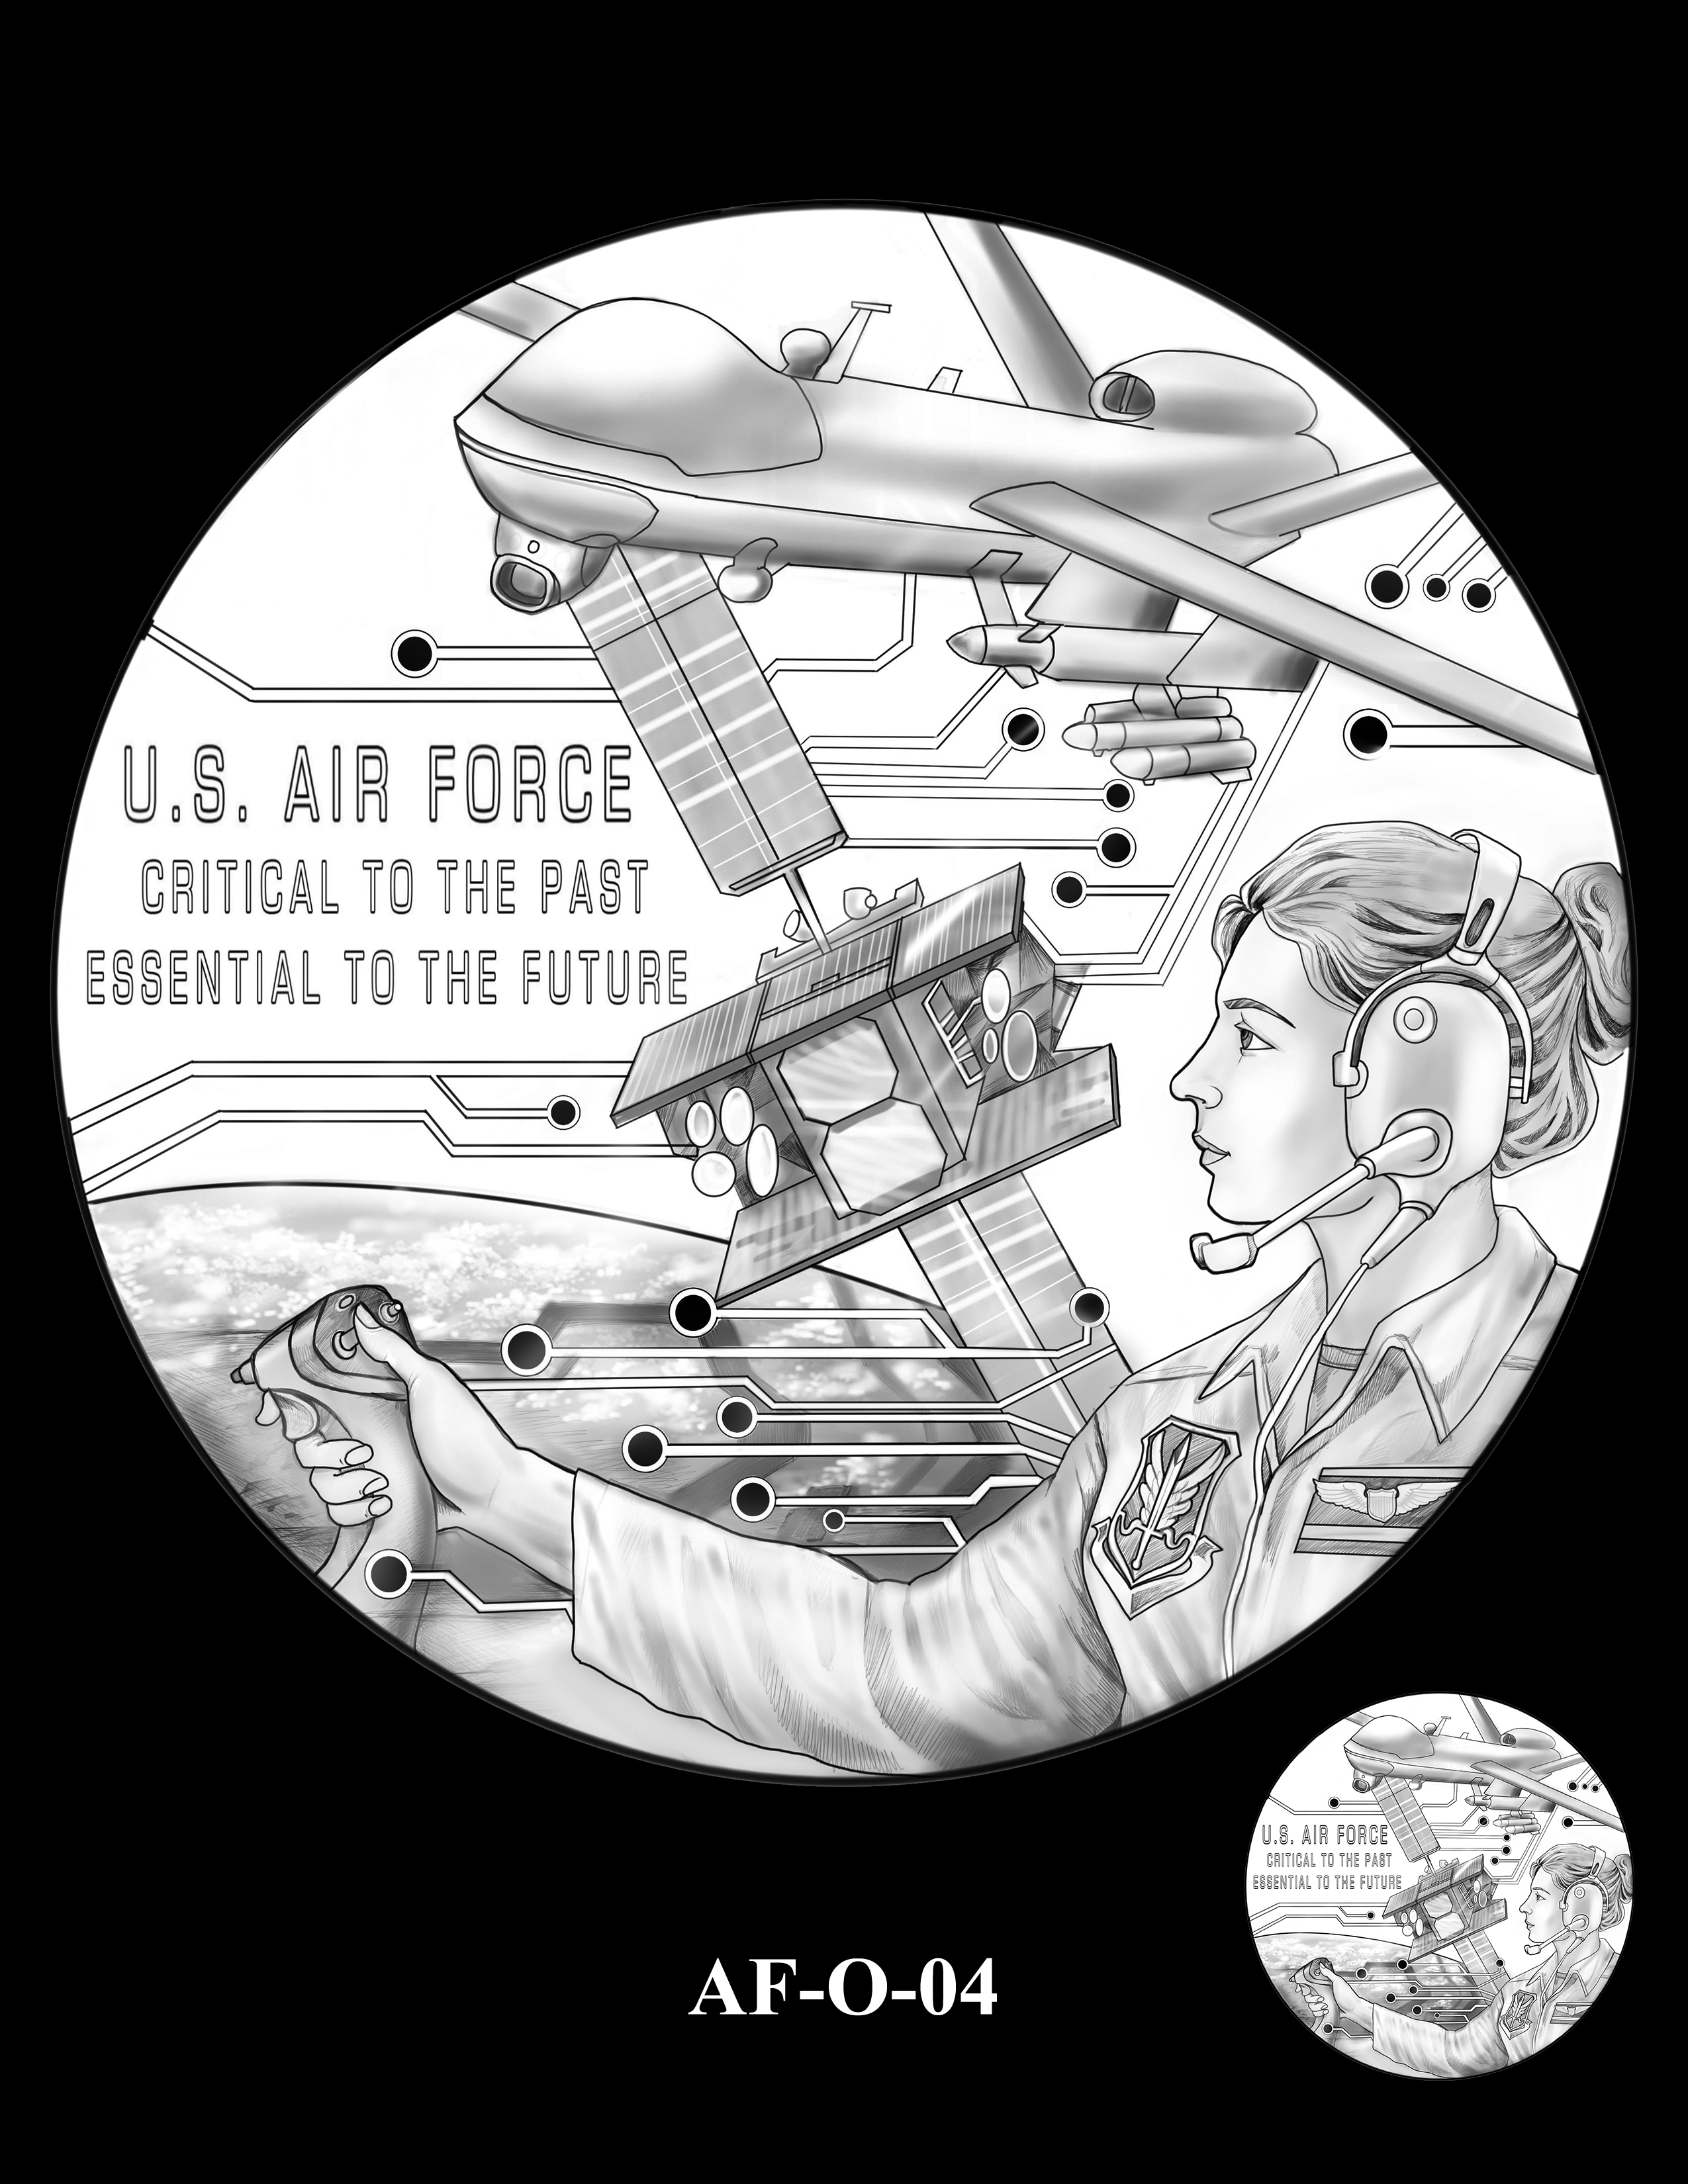 AF-O-04 -- Armed Forces Medal - Air Force